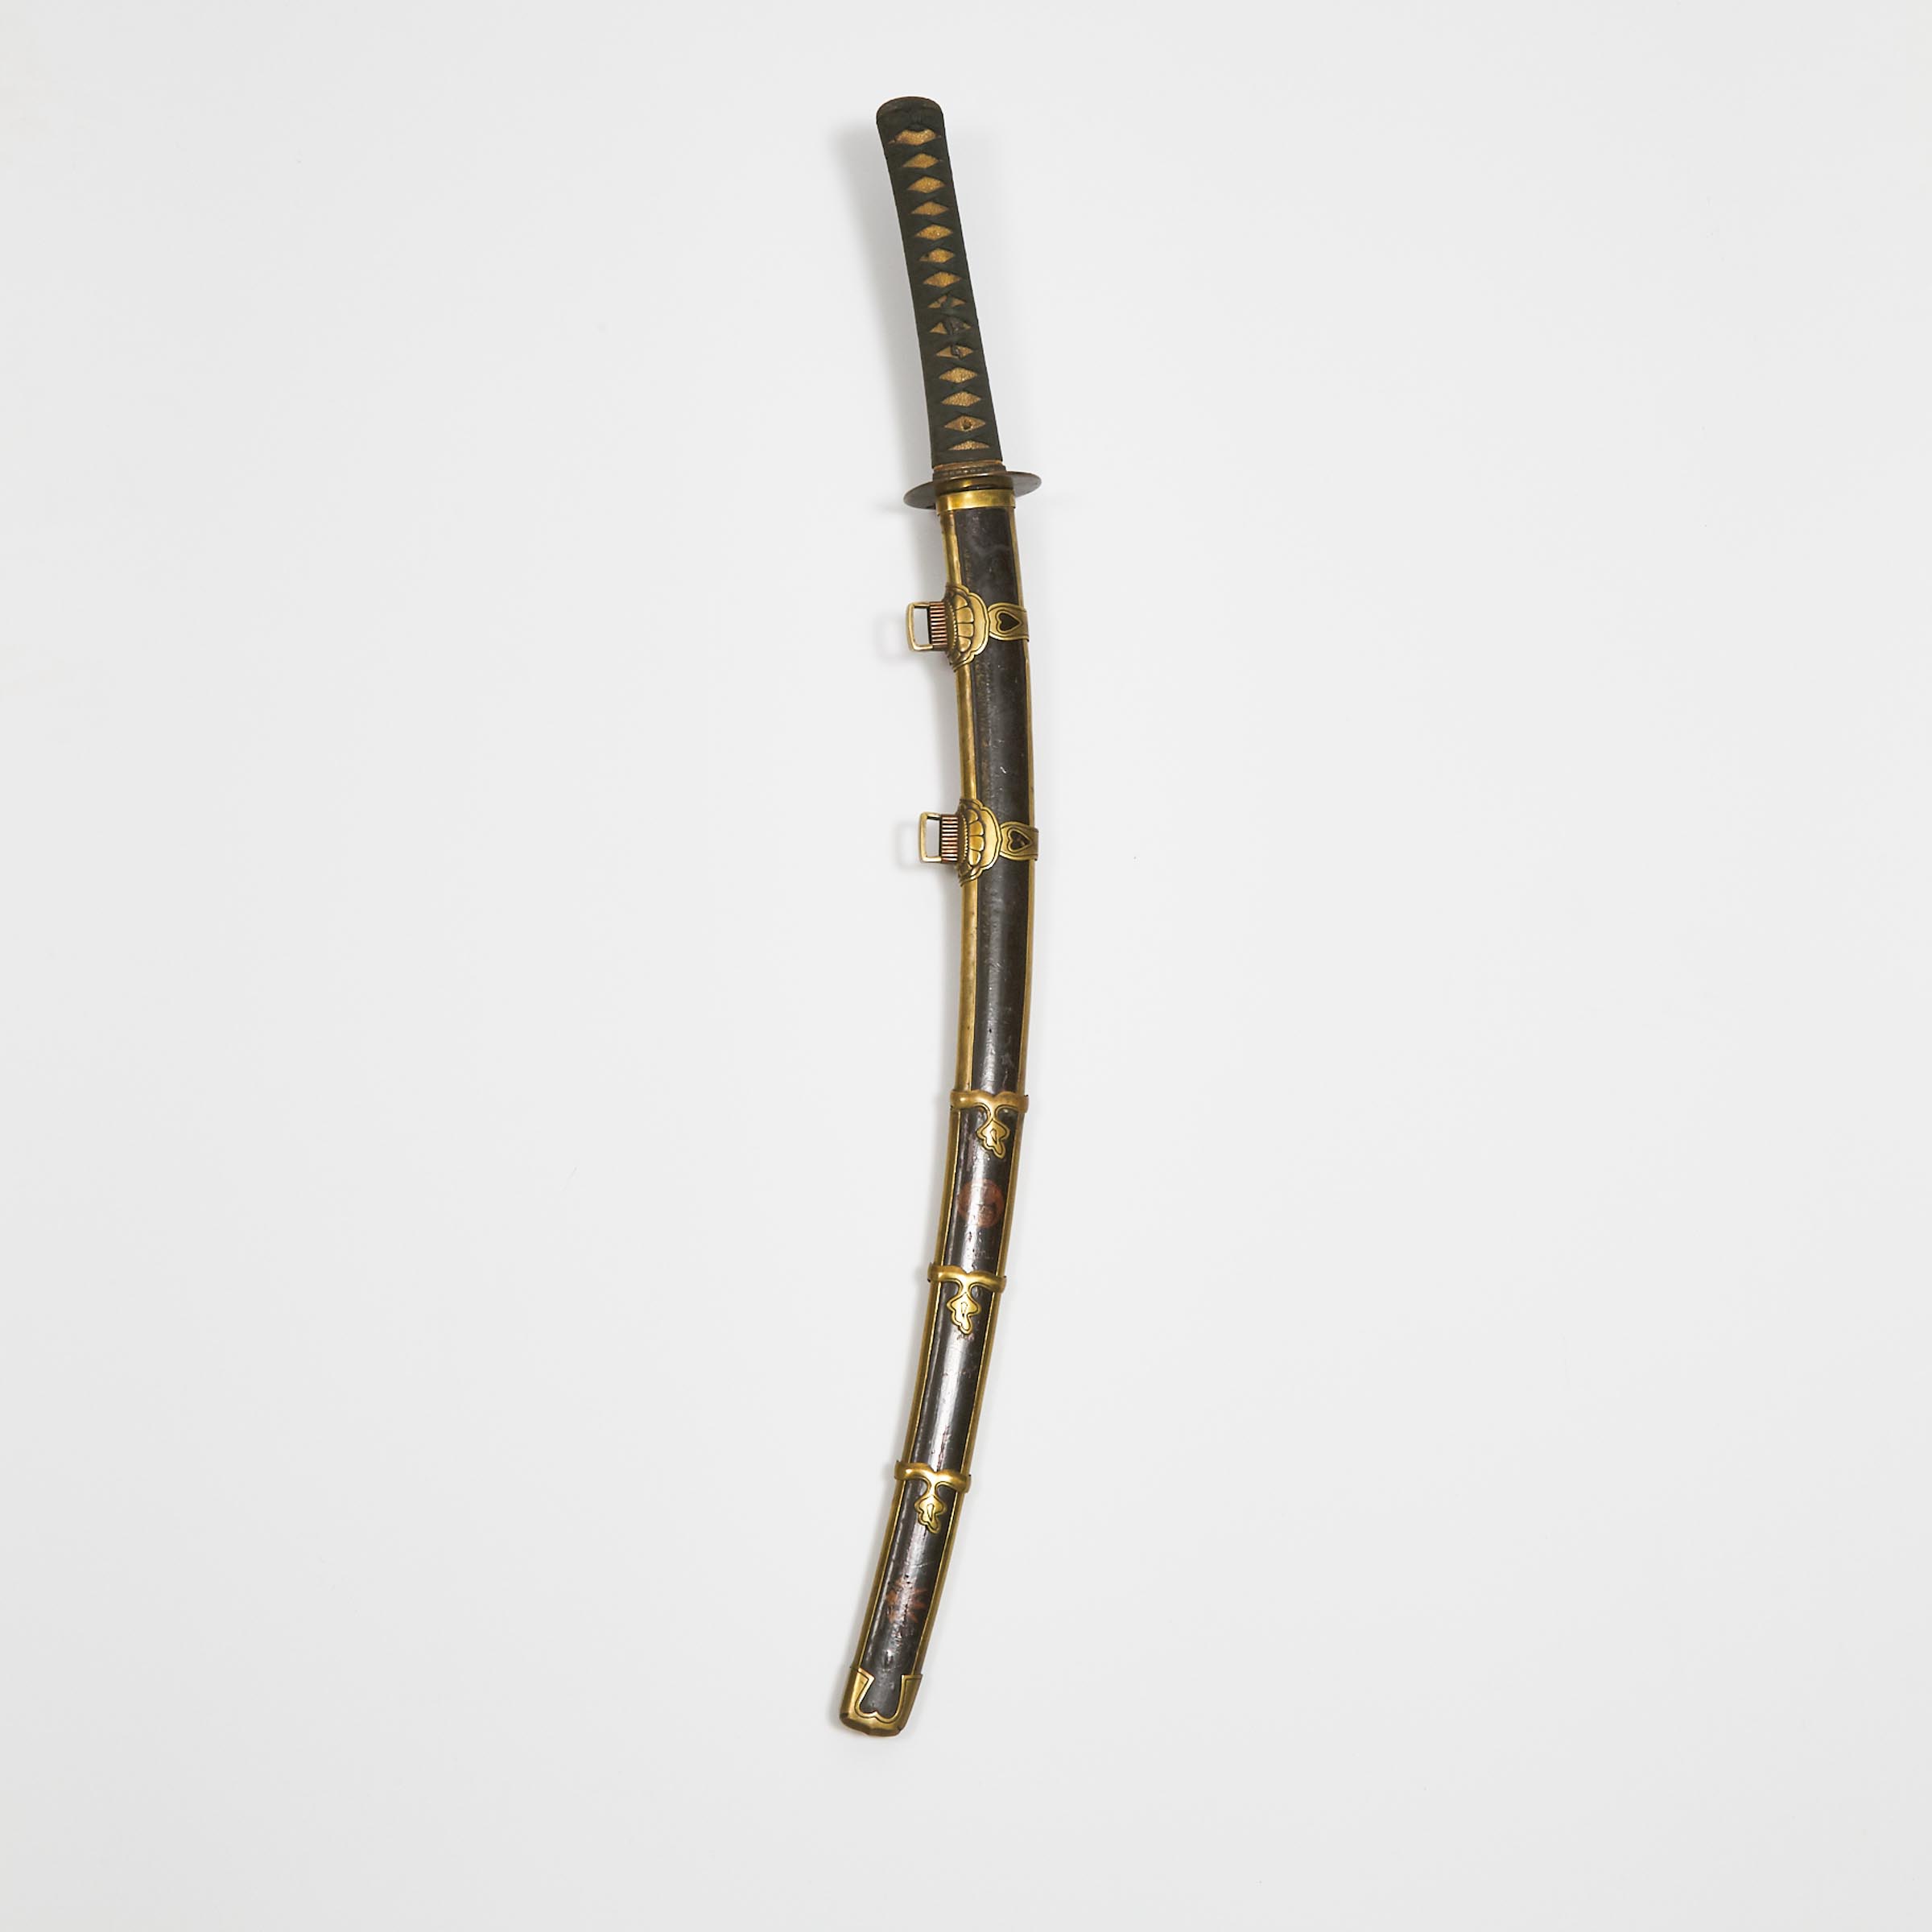 A Katana Koshirae Sword Mountings  3ac524